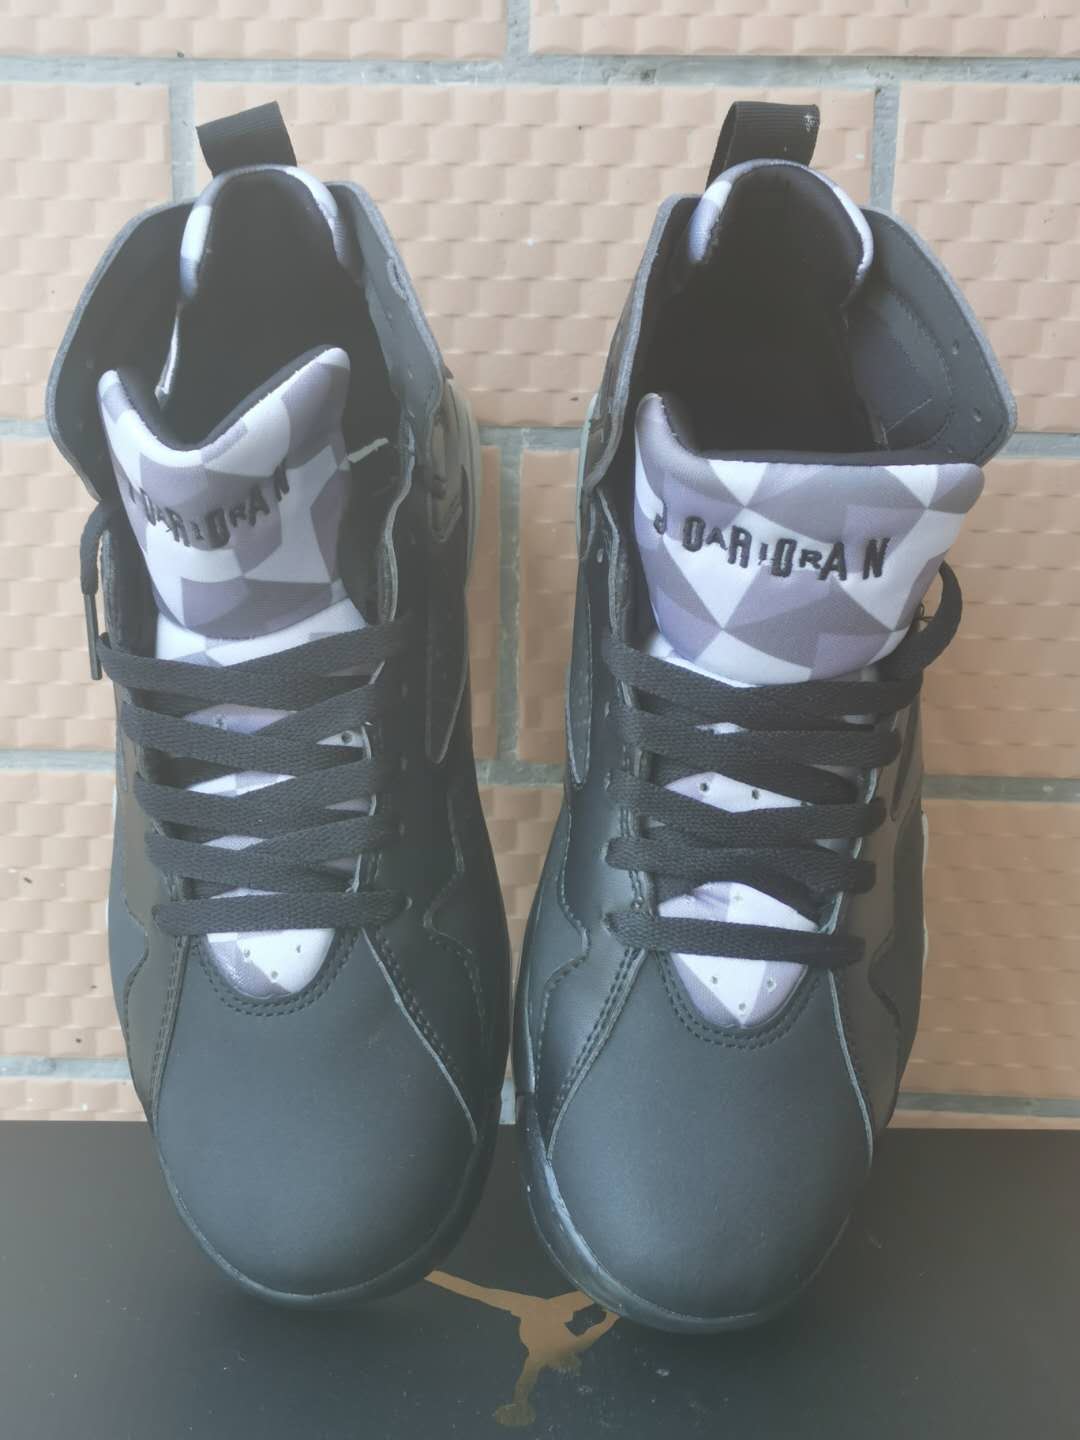 2020 Cheap Air Jordan 7 Sneakers For Men in 227641, cheap Jordan7, only $65!